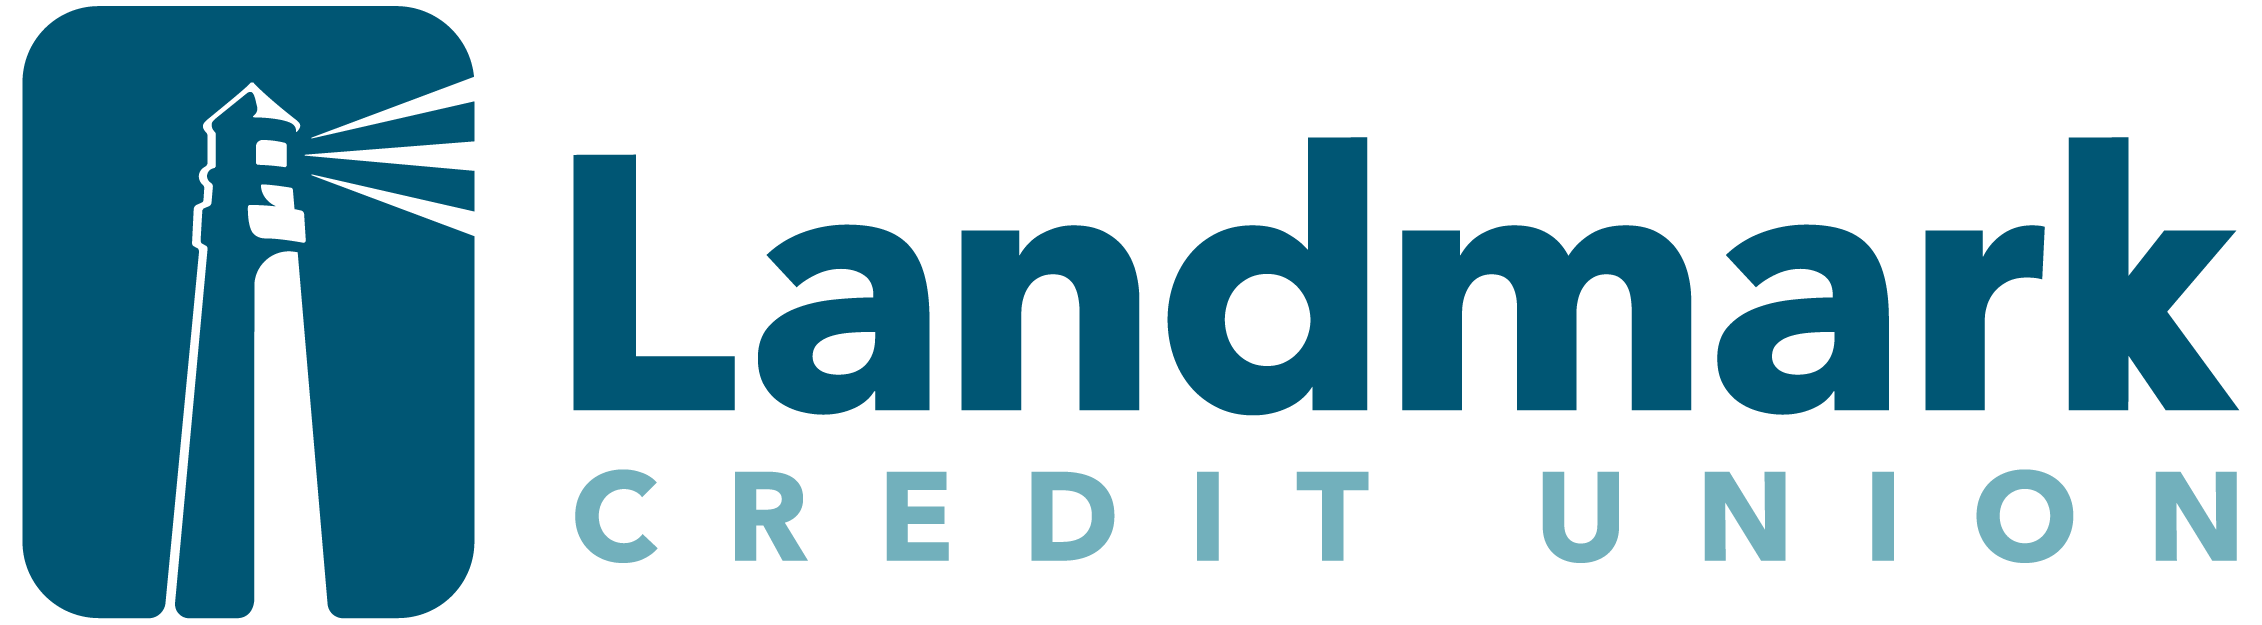 Landmark Credit Union Logo with Lighthouse